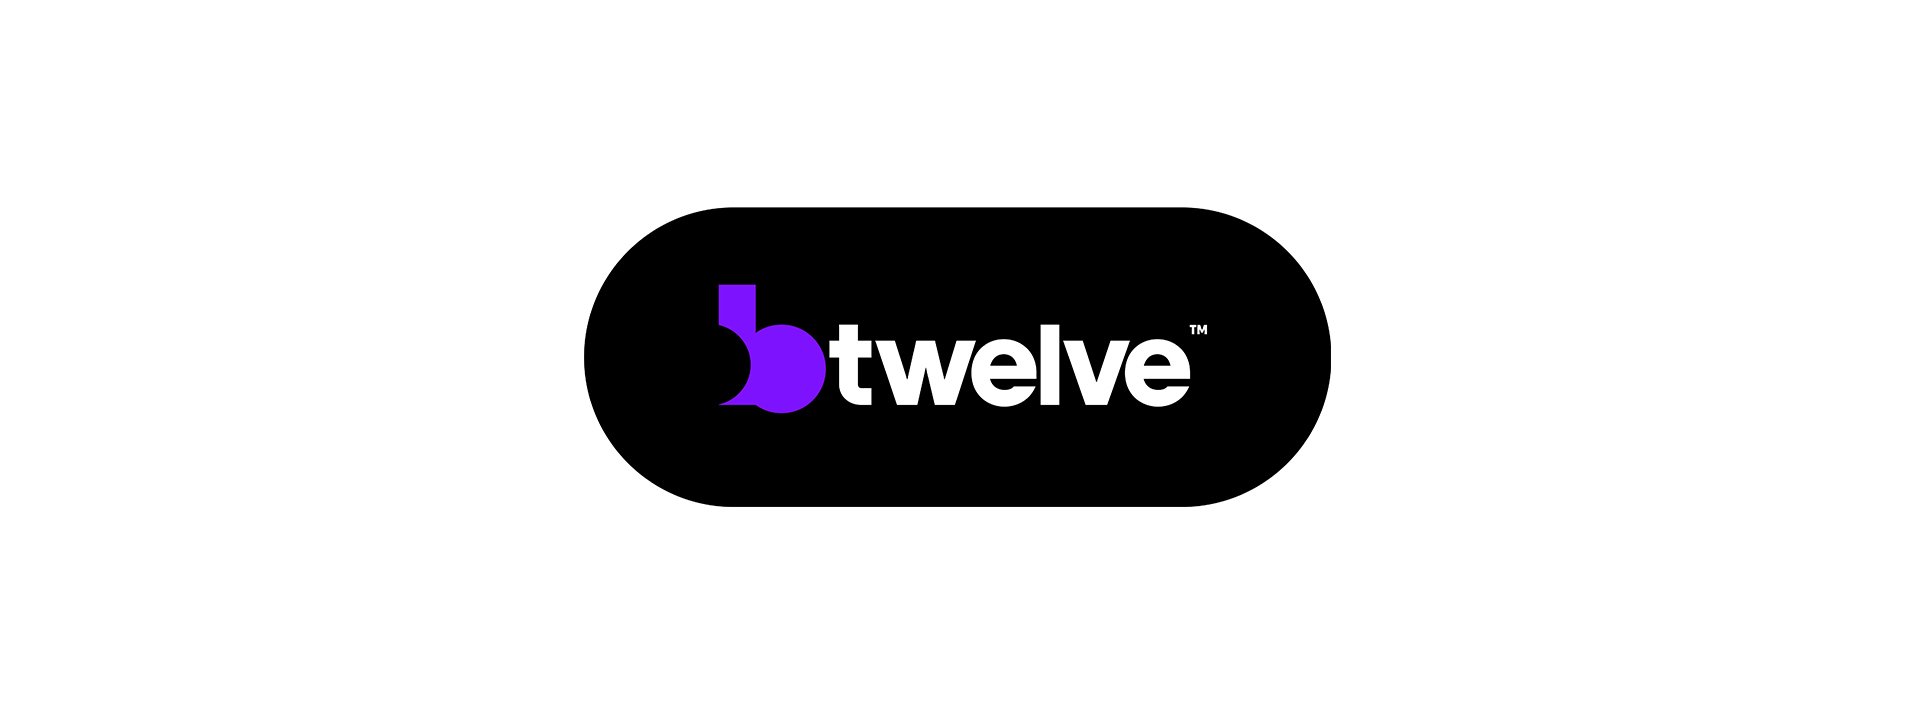 btwelve logo